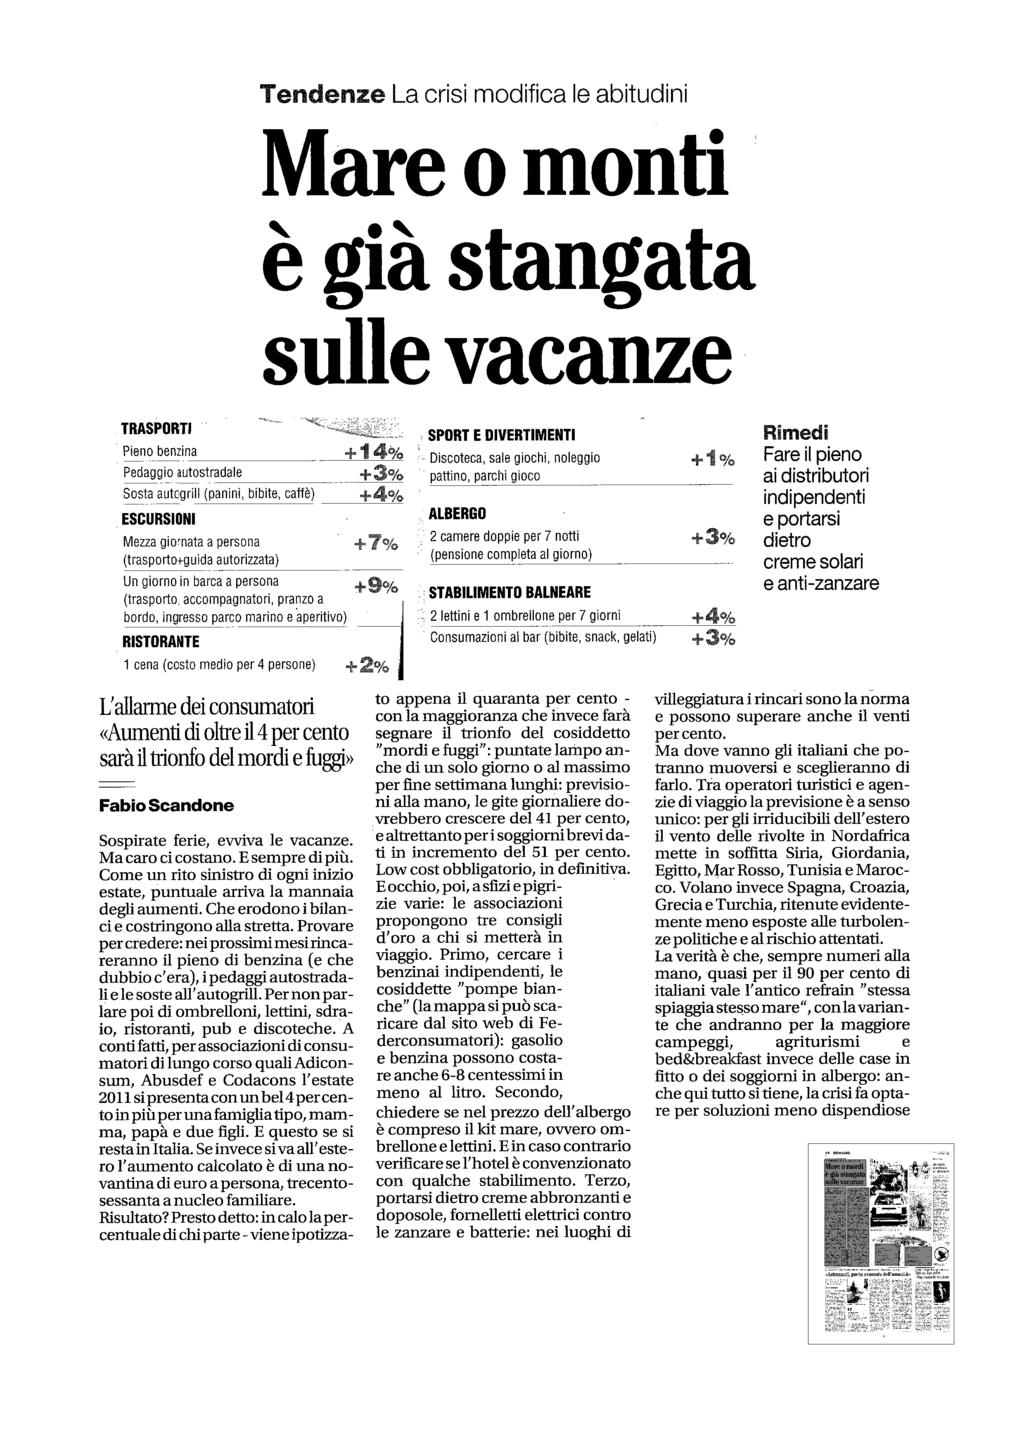 Quotidiano Napoli 22-MAG-2011 Diffusione: 75.